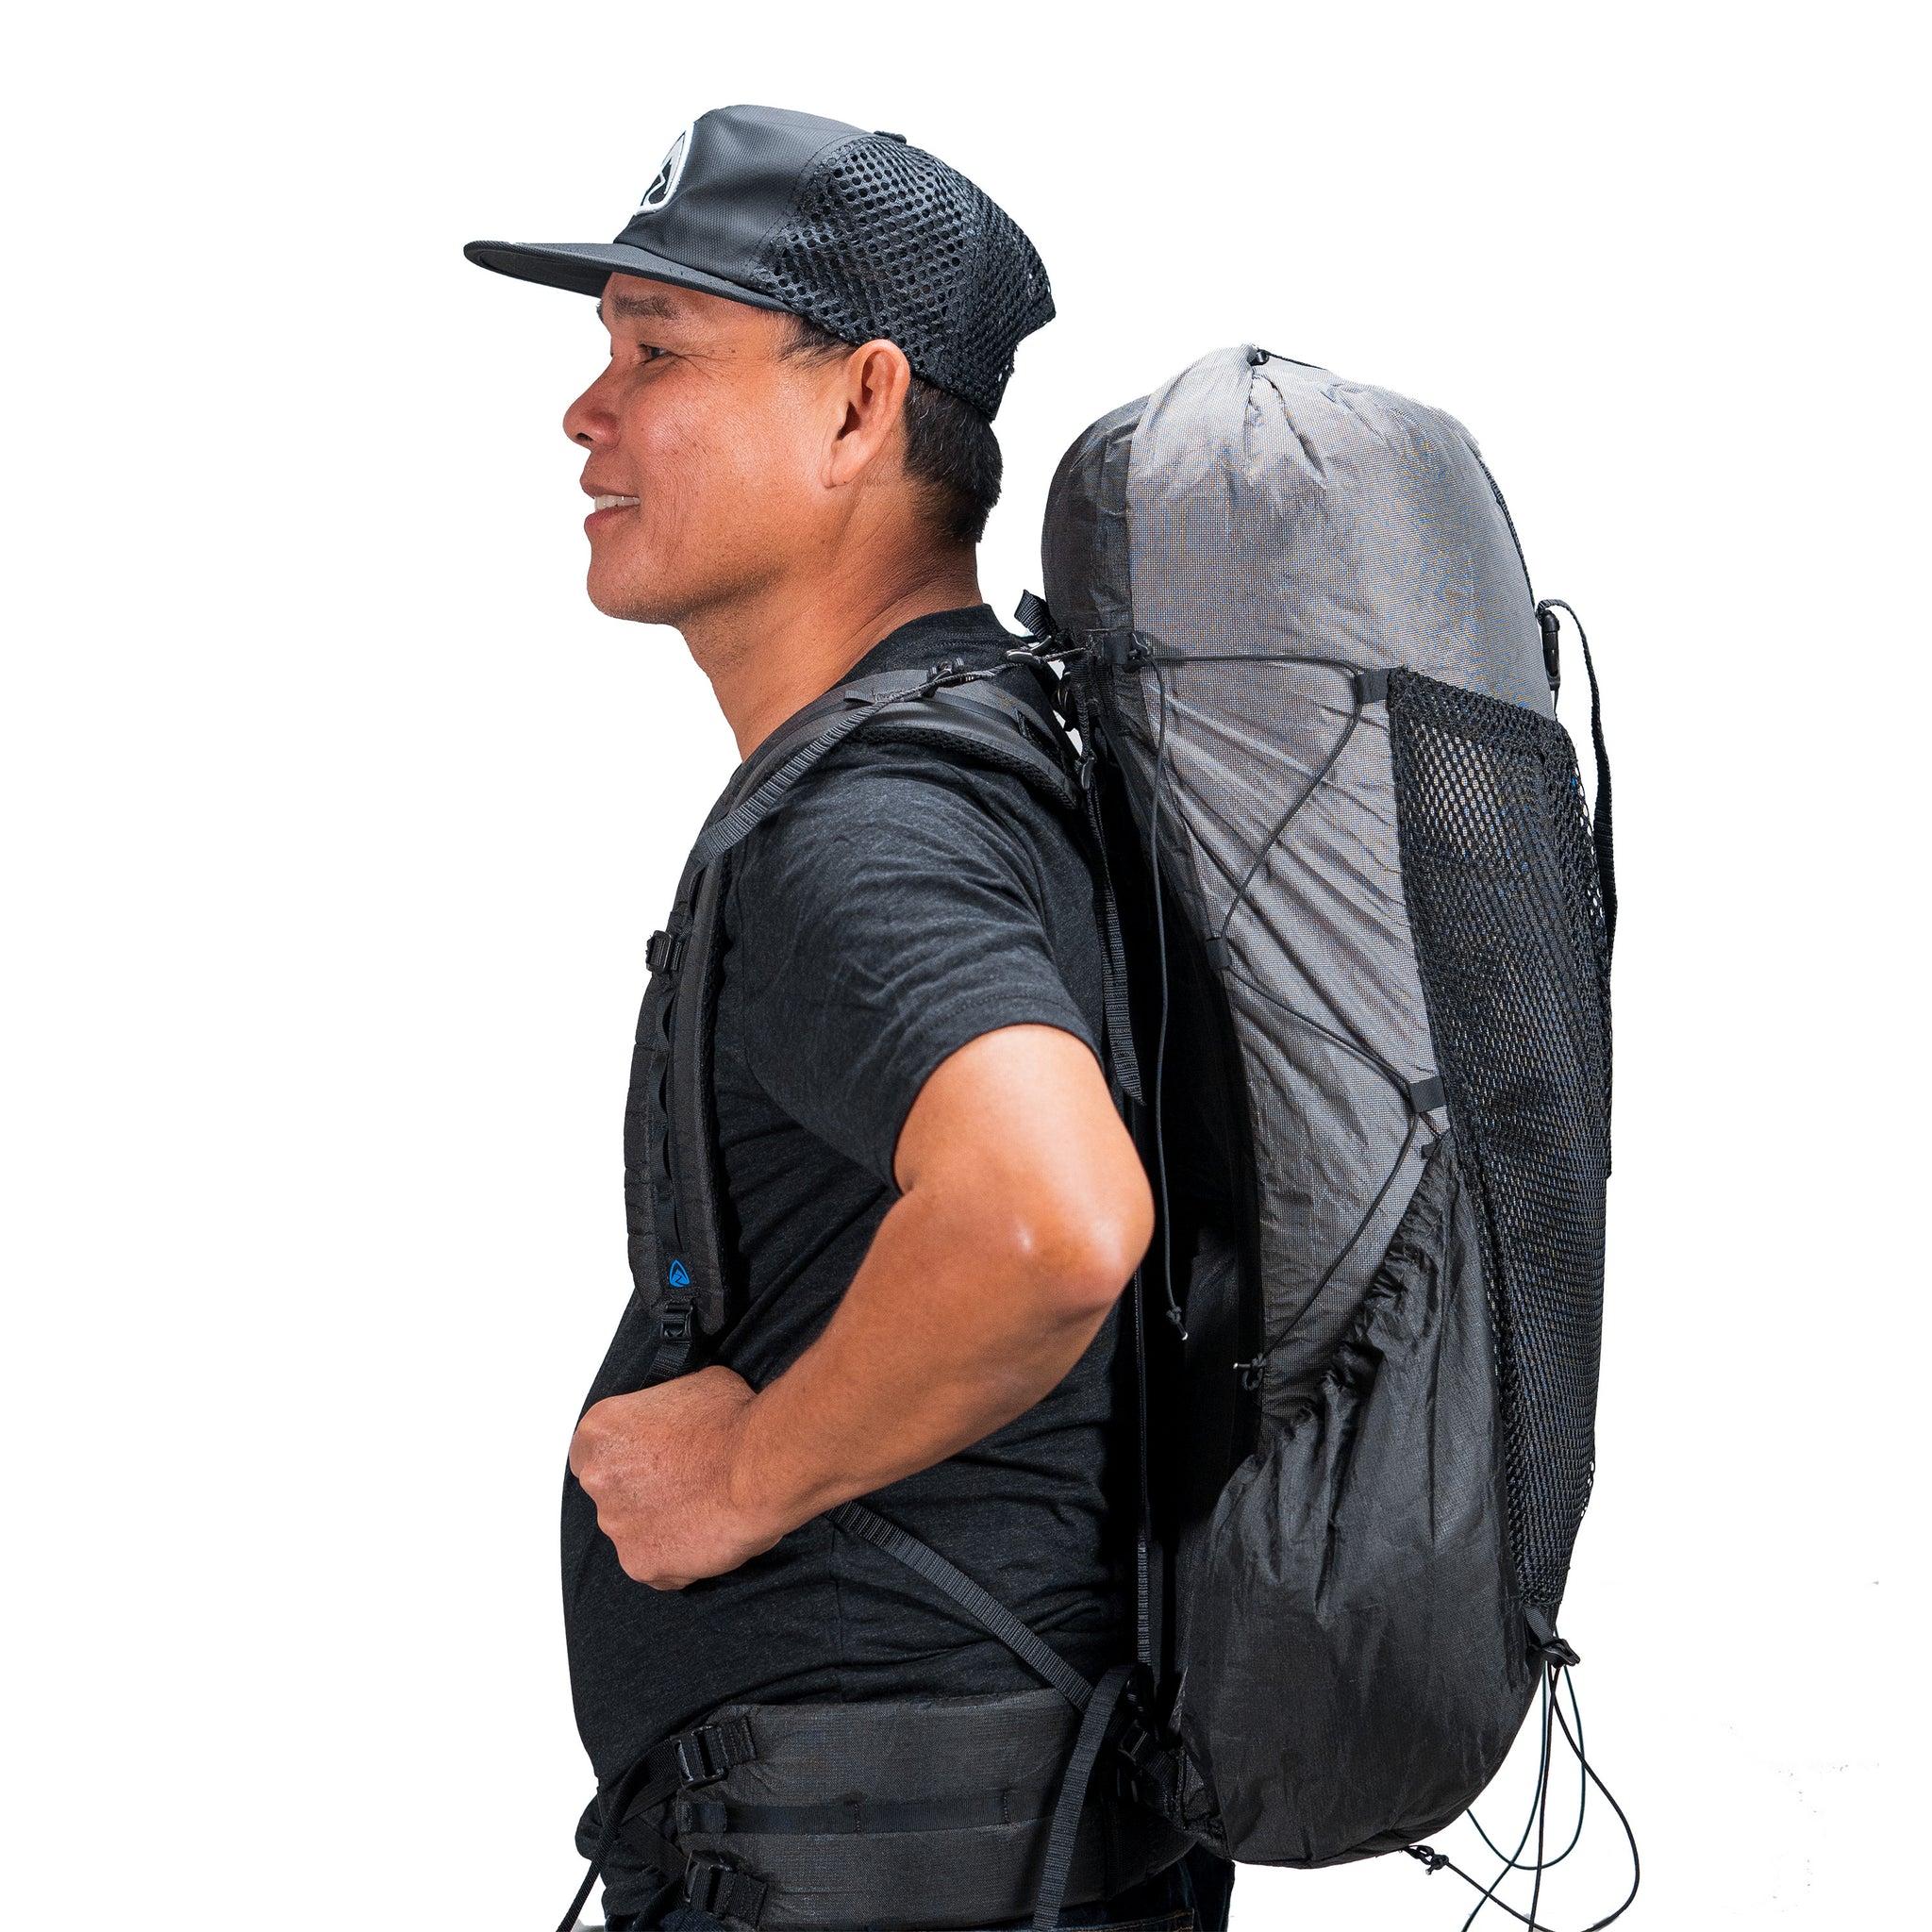 Voorganger Druif Afstudeeralbum Arc Haul Ultra 40L - UL Hiking Backpack | Zpacks